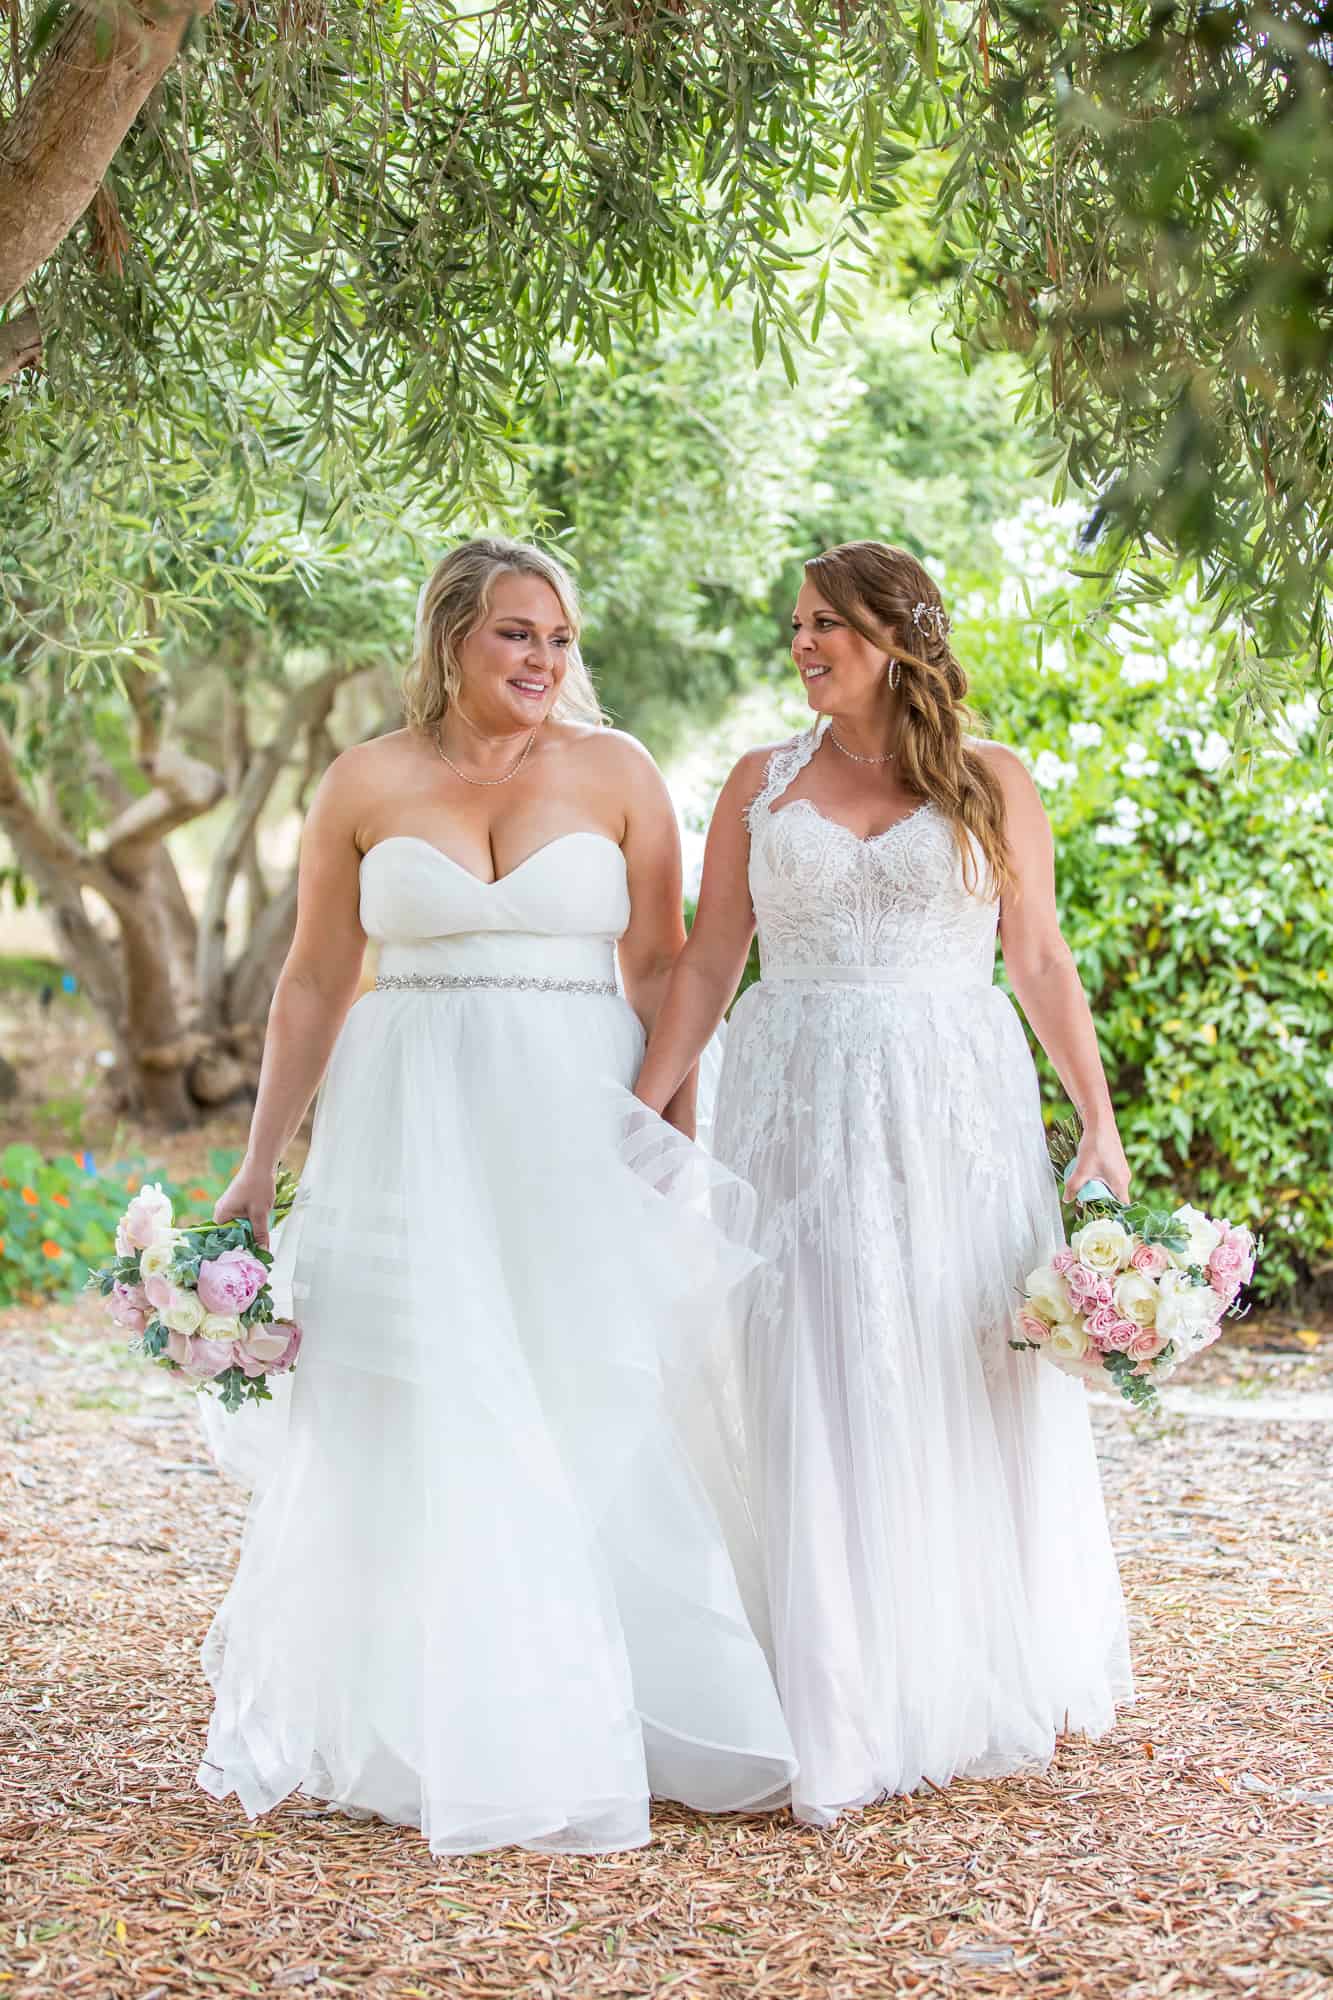 lesbian brides walking together